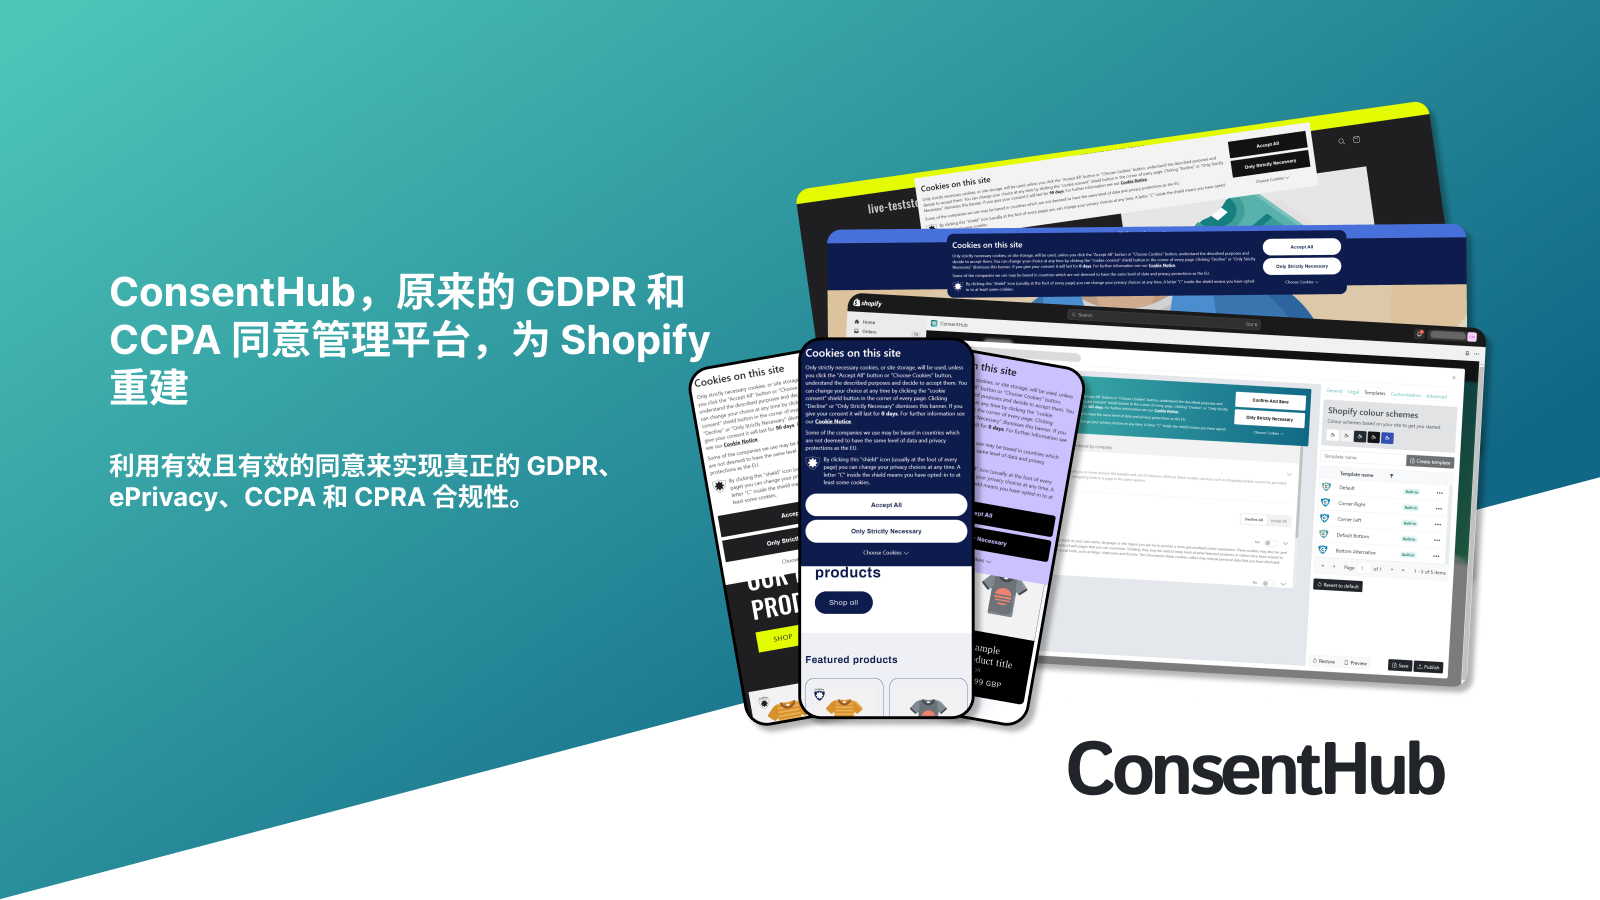 对 GDPR、ePrivacy、CCPA 和 CPRA 合规性的有效同意。